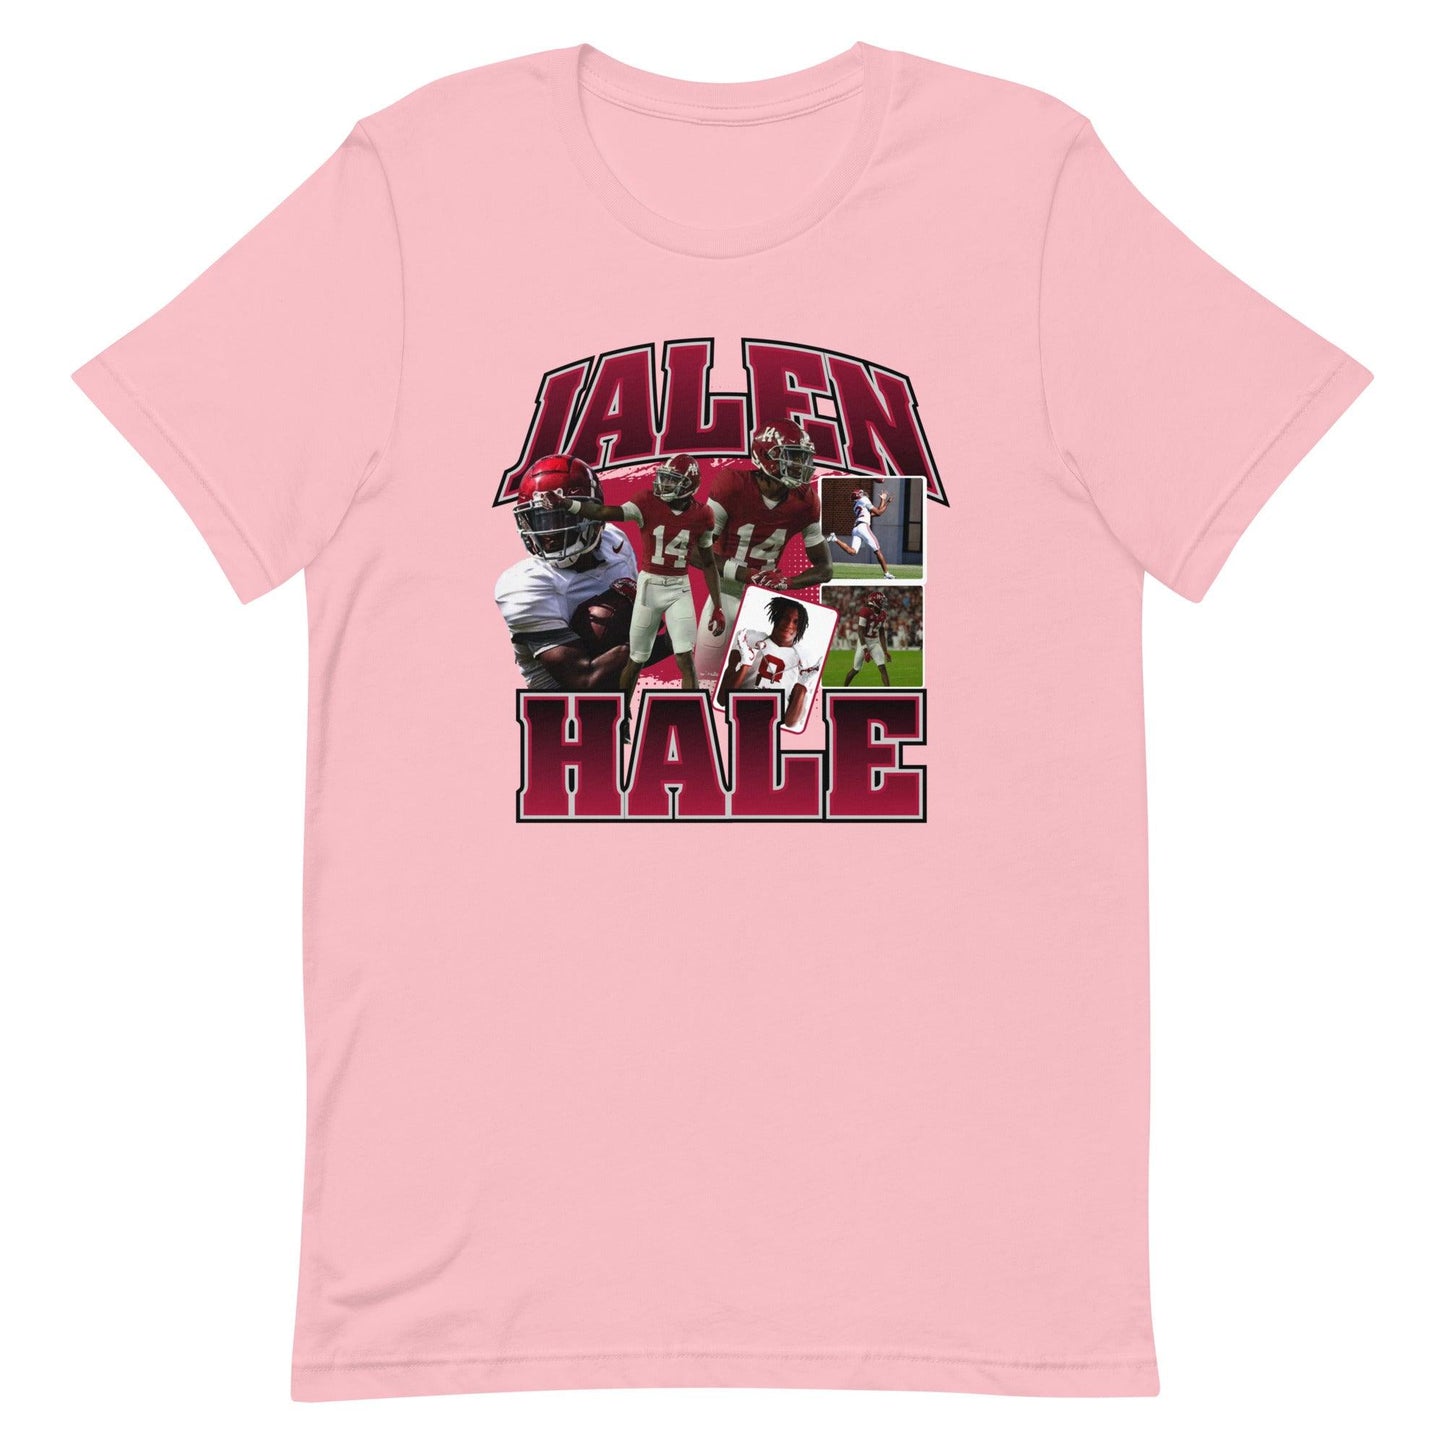 Jalen Hale "Vintage" t-shirt - Fan Arch